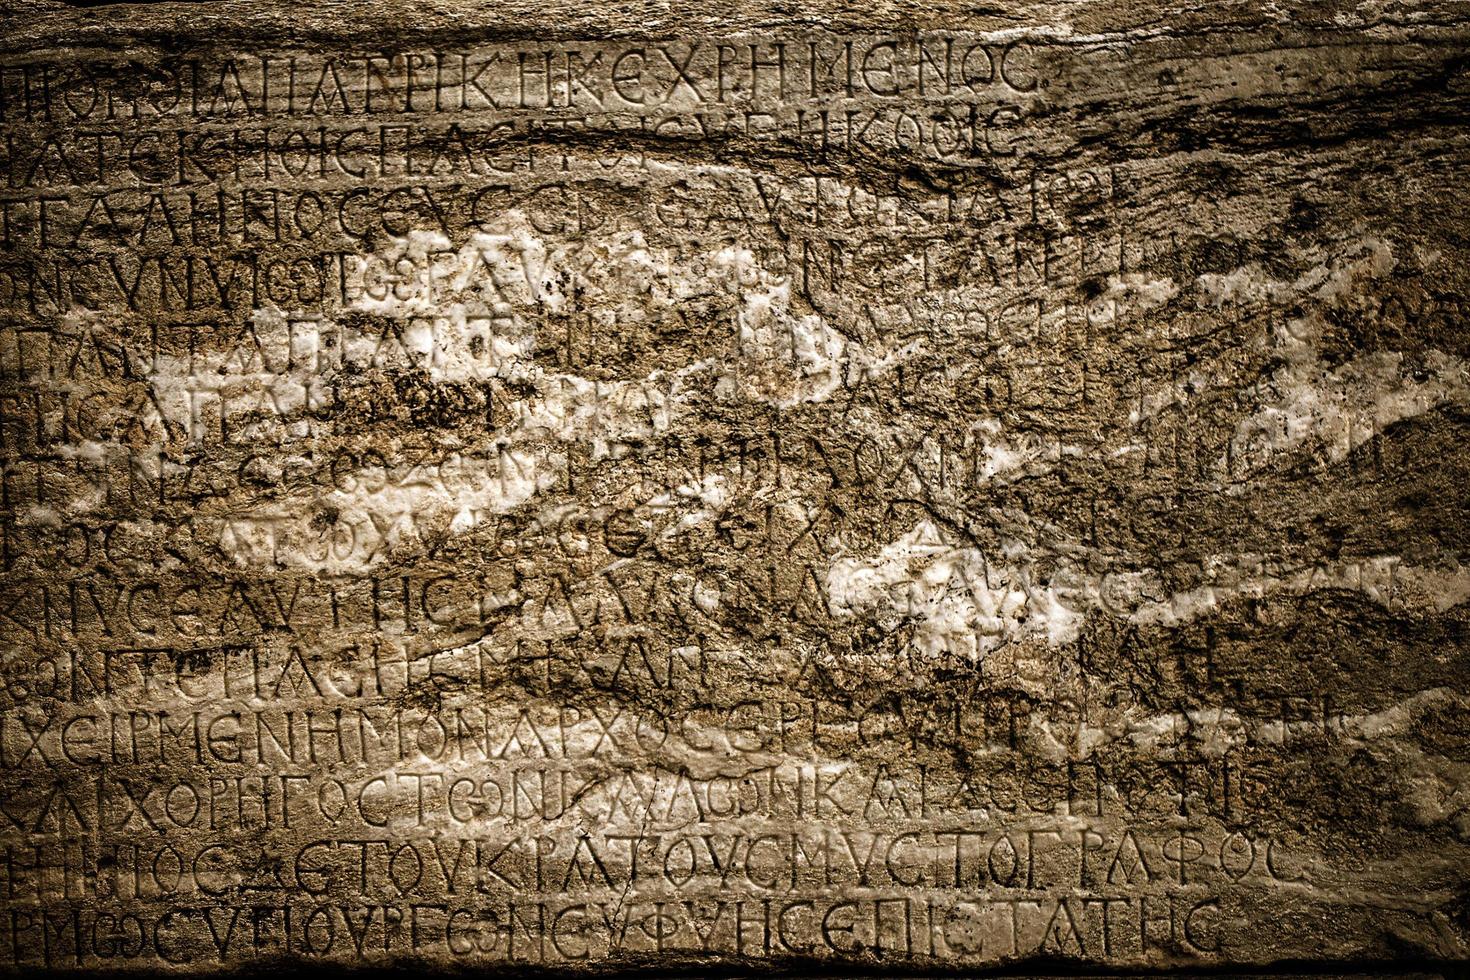 simboli storici segni alfabeti dell'antico egitto foto